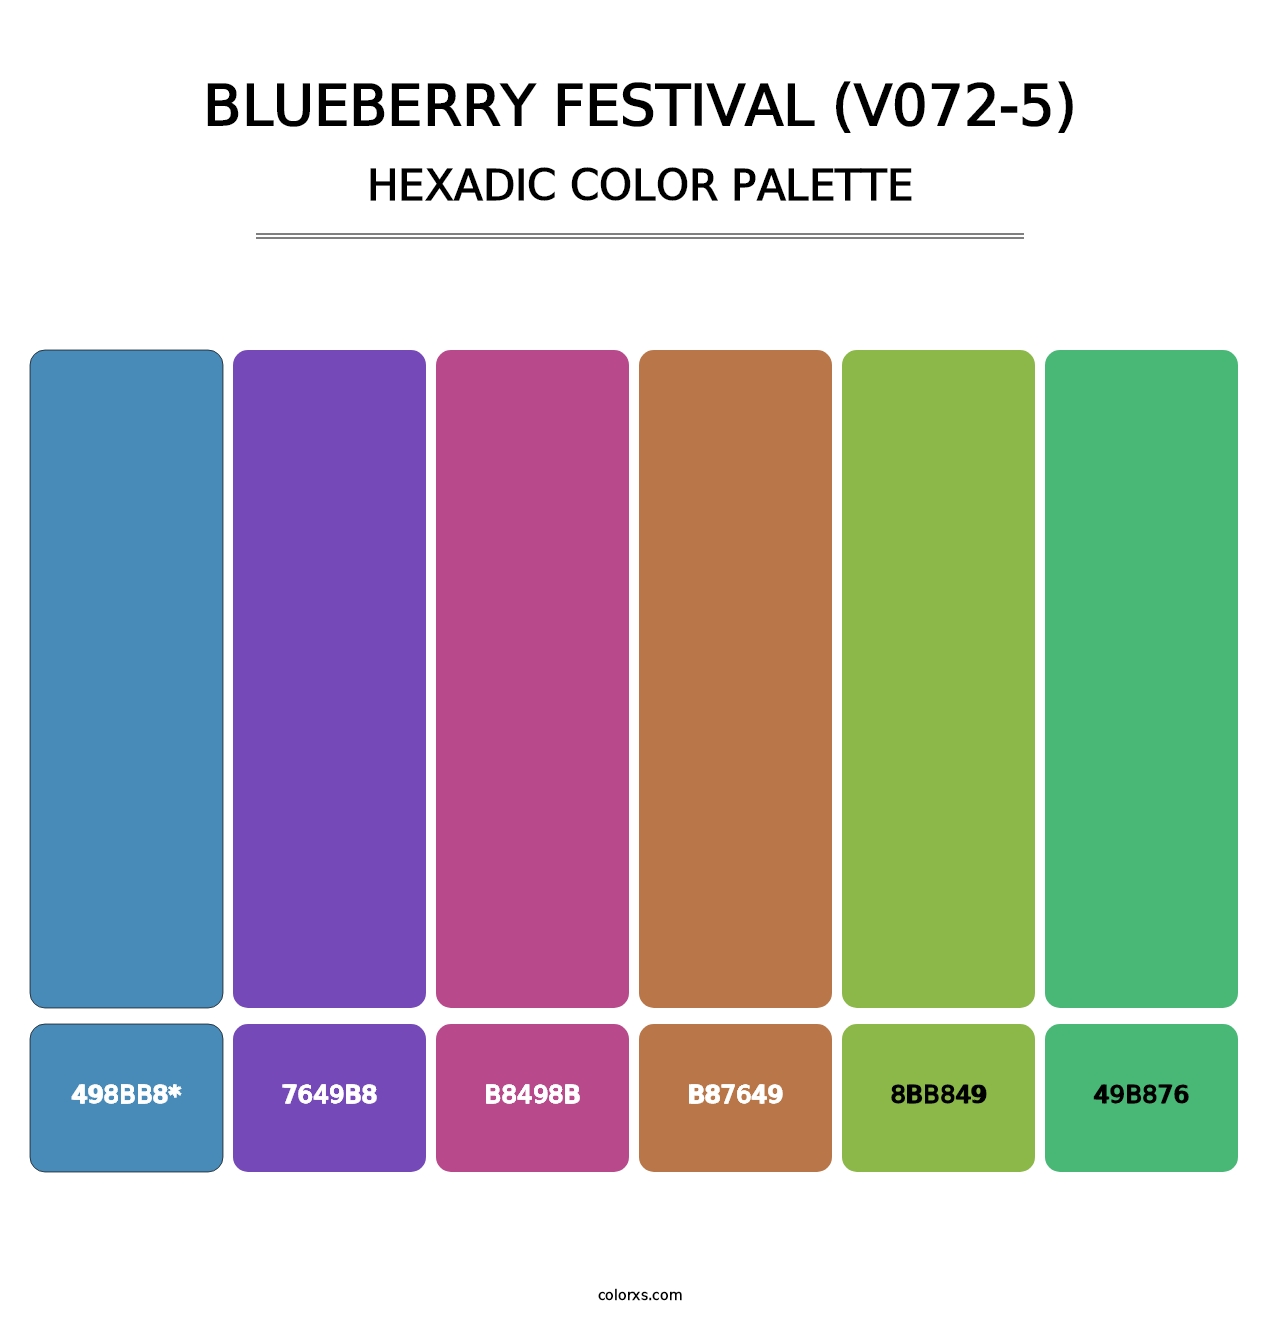 Blueberry Festival (V072-5) - Hexadic Color Palette